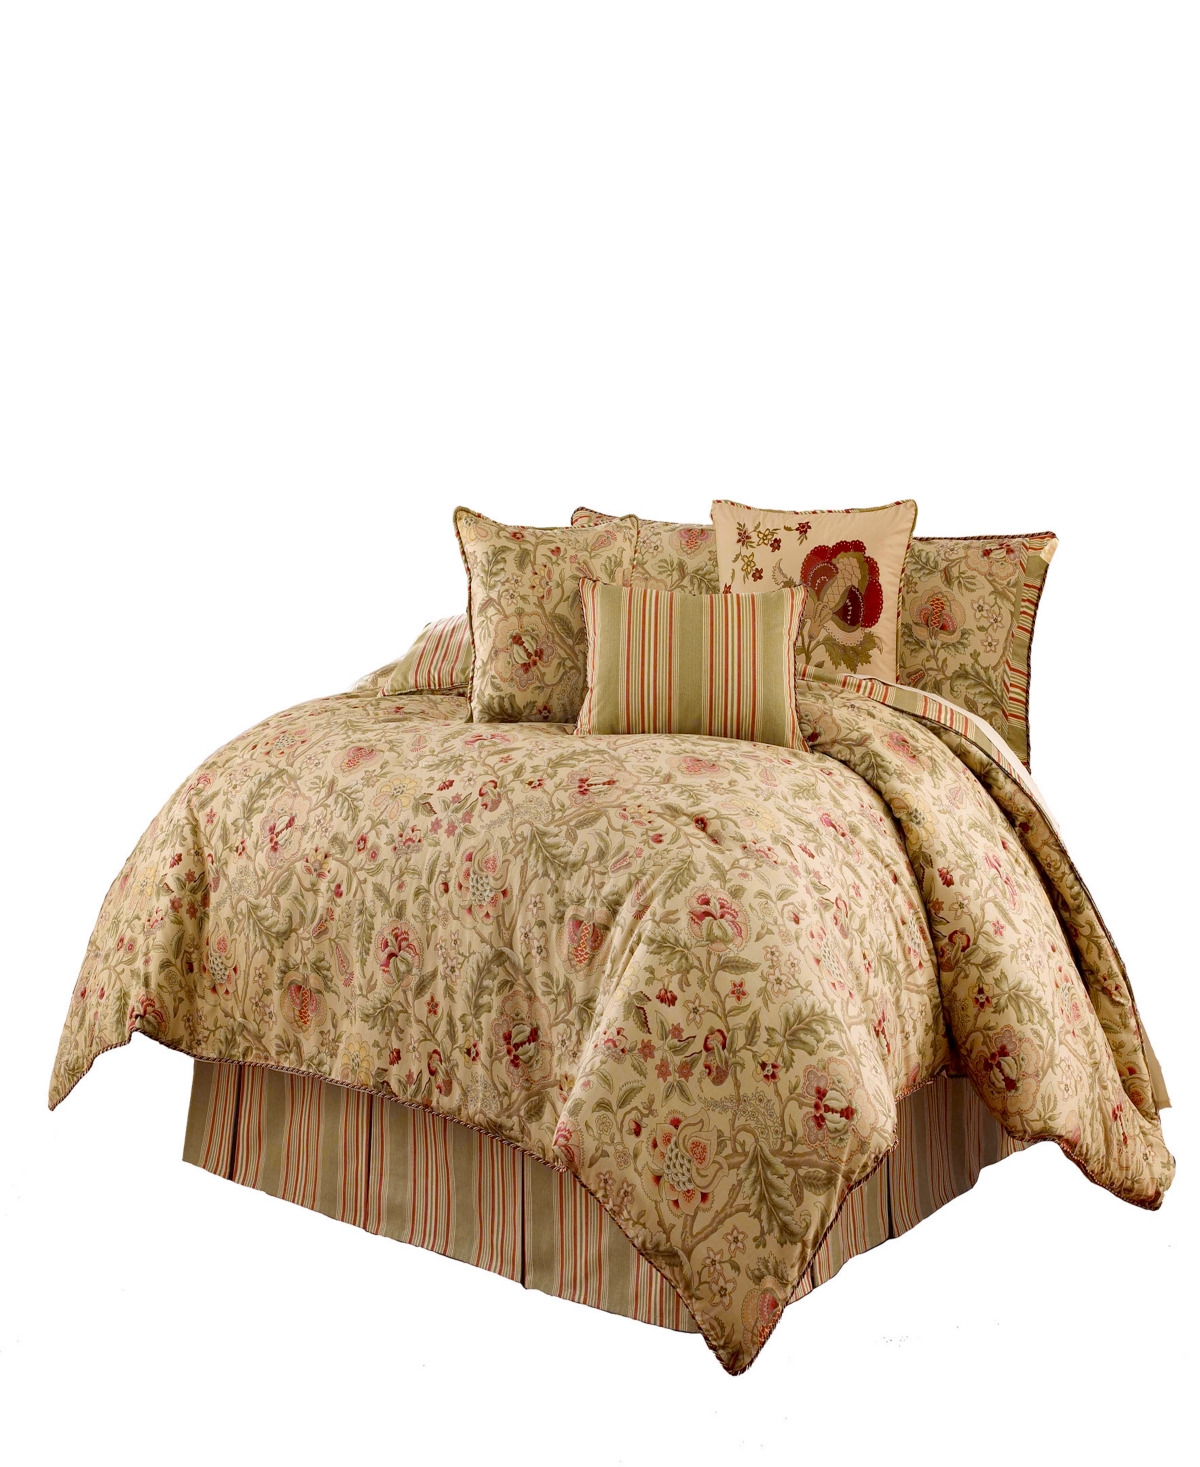 Imperial Dress 4-piece Queen Comforter Set Bedding